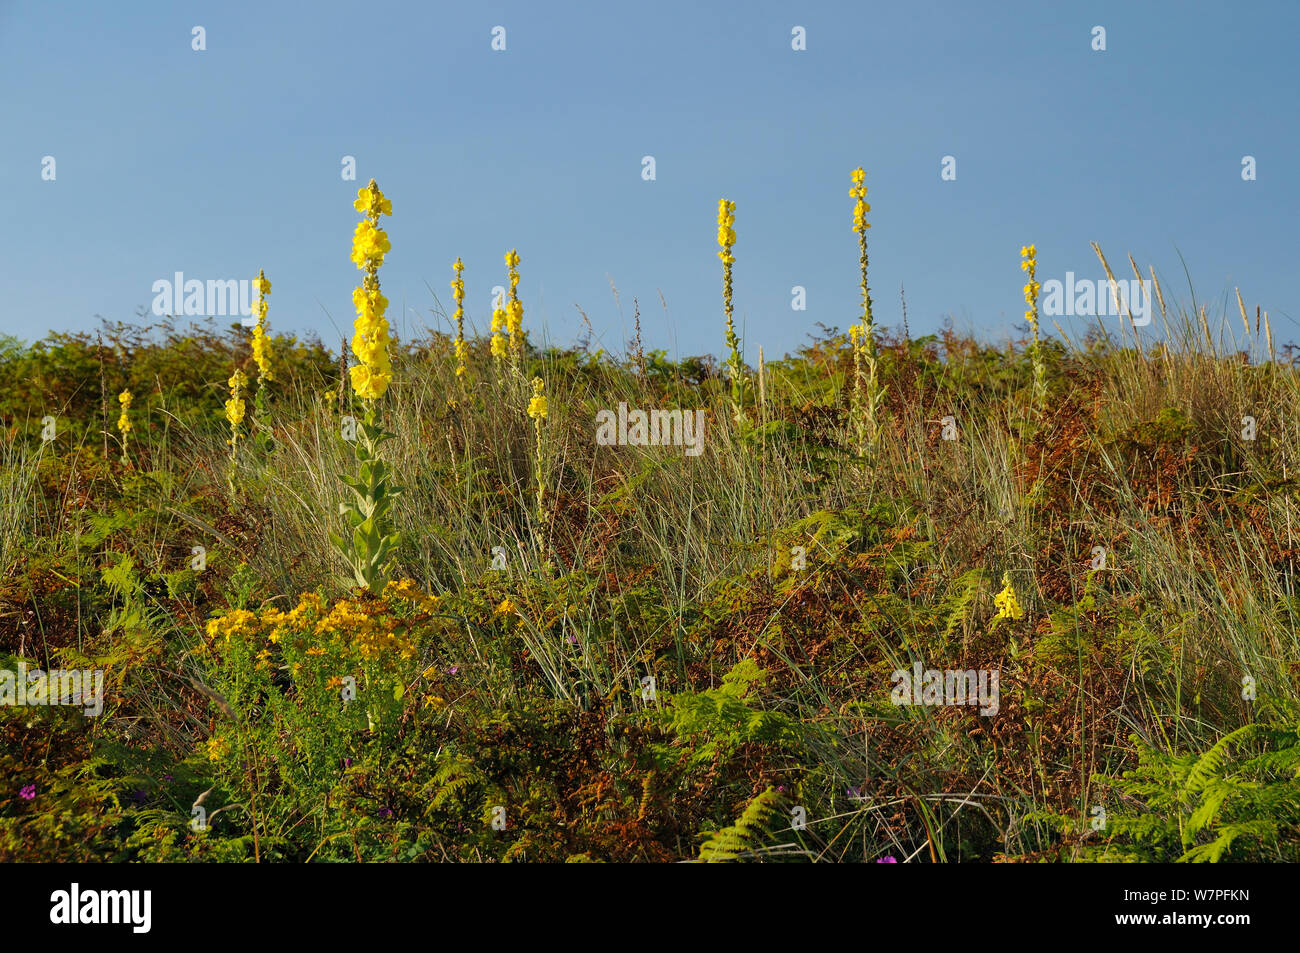 La verga di Aronne (Molène thapsus) fioritura in profusione su una stabile coastal dune di sabbia tra grases, felci e altre piante, Penisola di Gower, Wales, Regno Unito, Luglio. Foto Stock